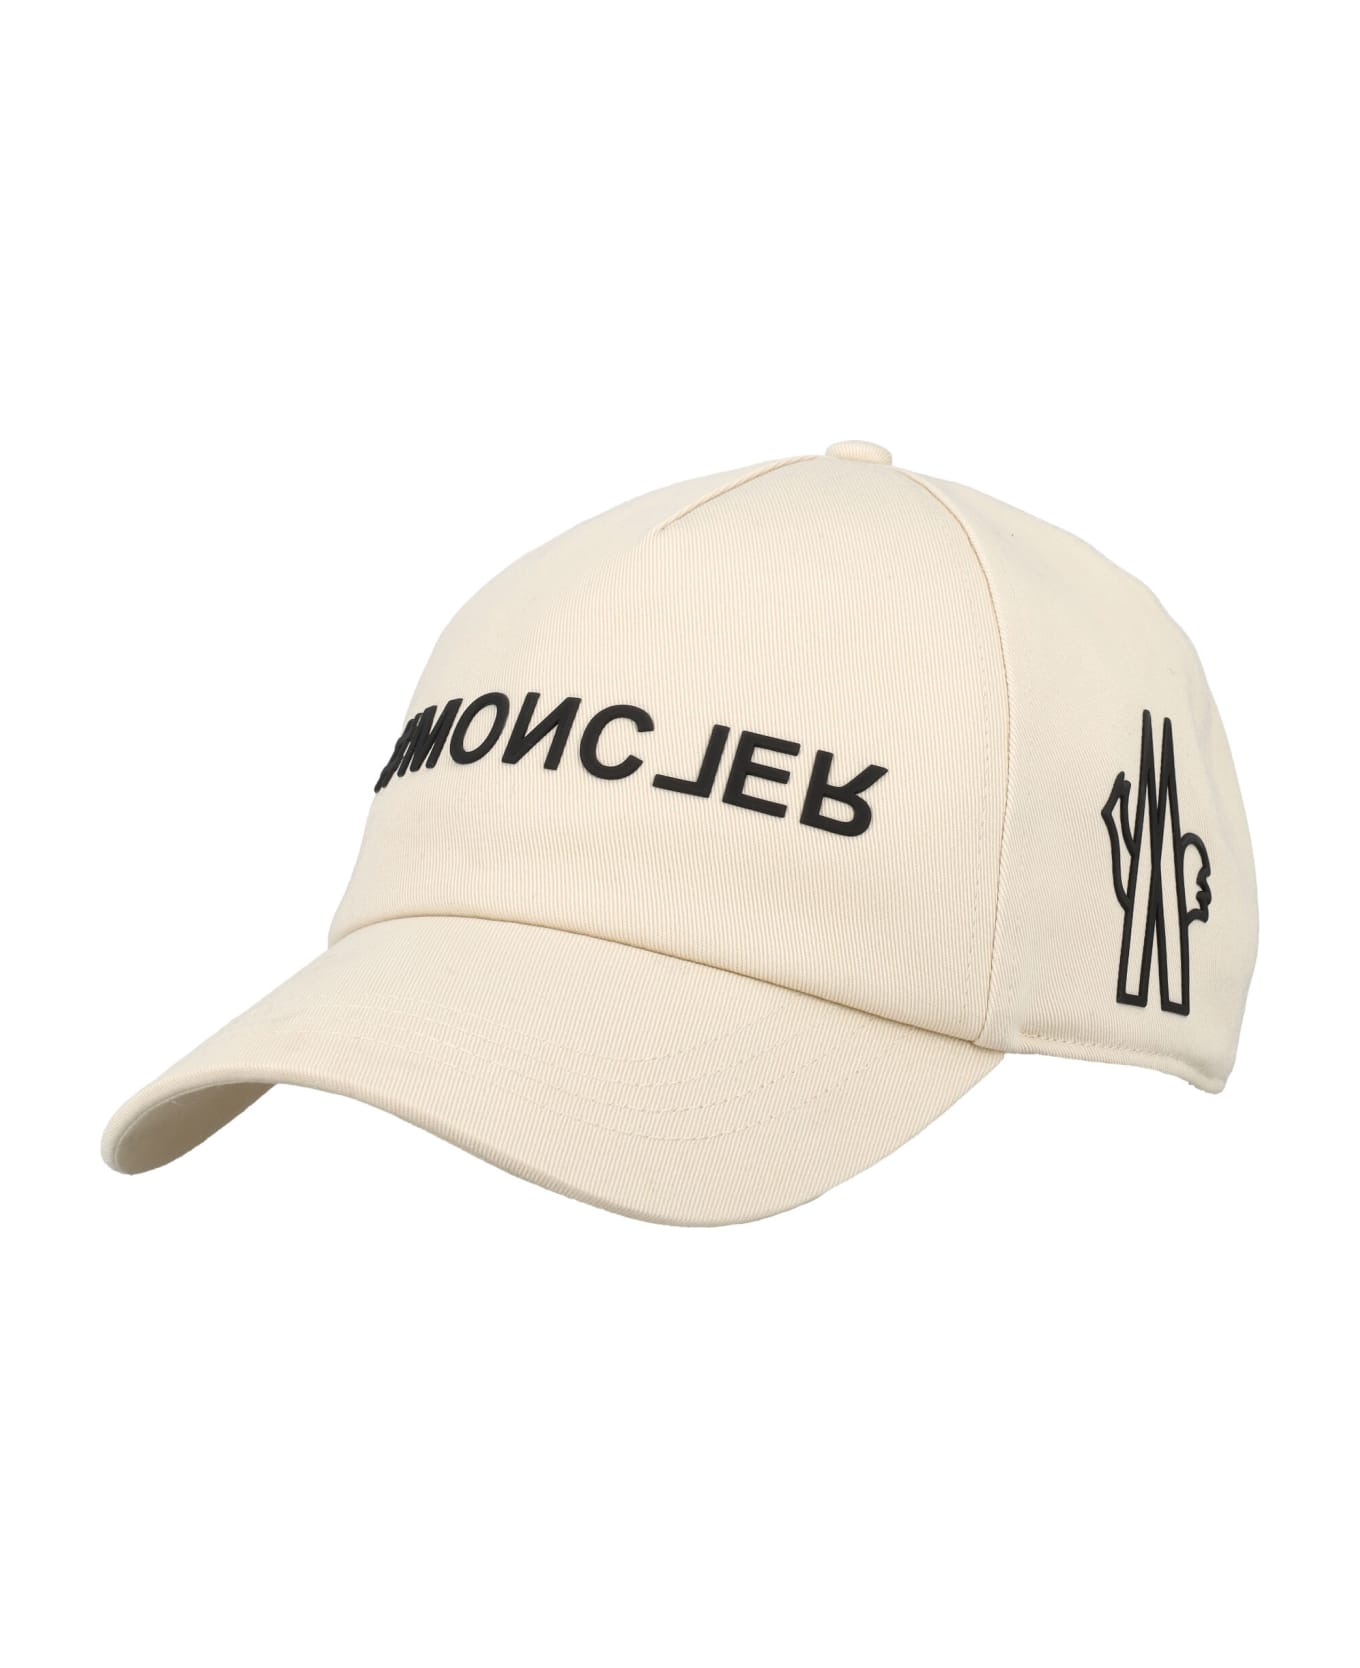 Moncler Grenoble Baseball Cap - WHITE